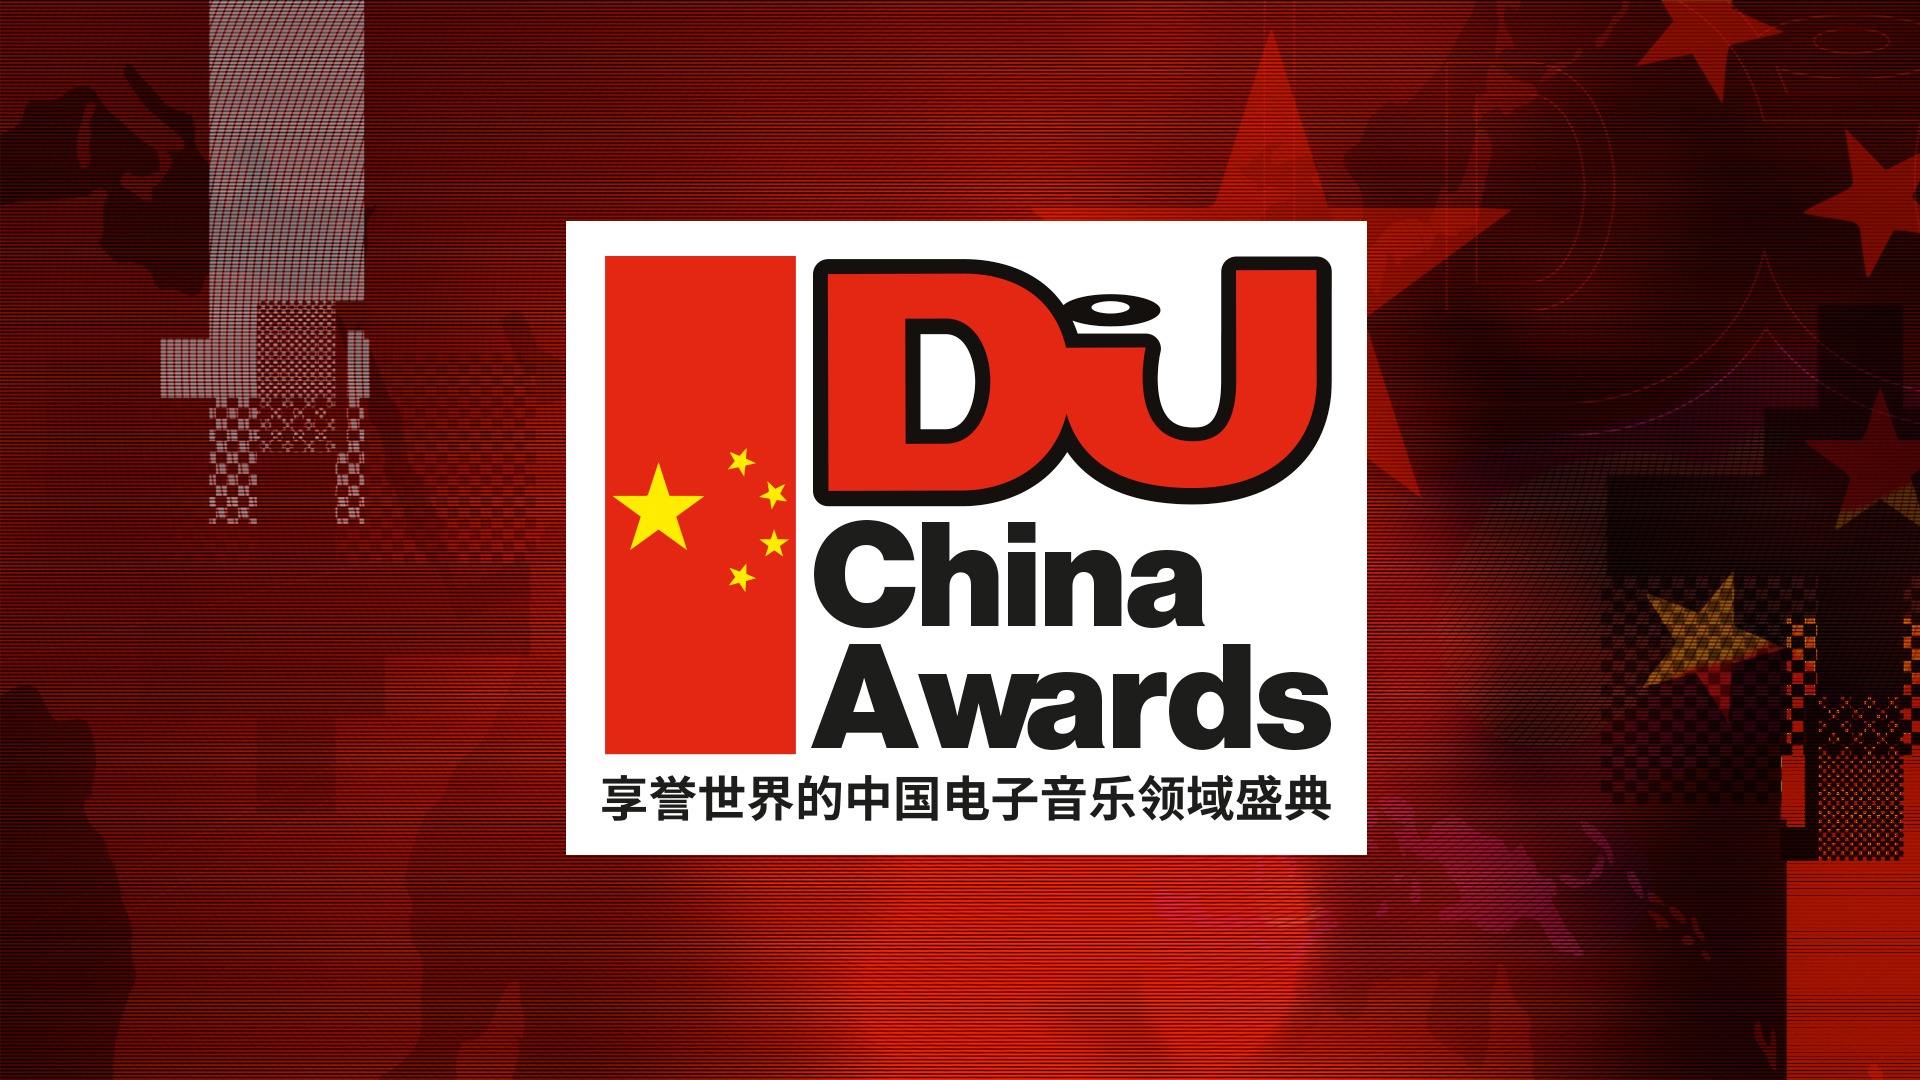 DJ Mag launches first DJ Mag China Awards